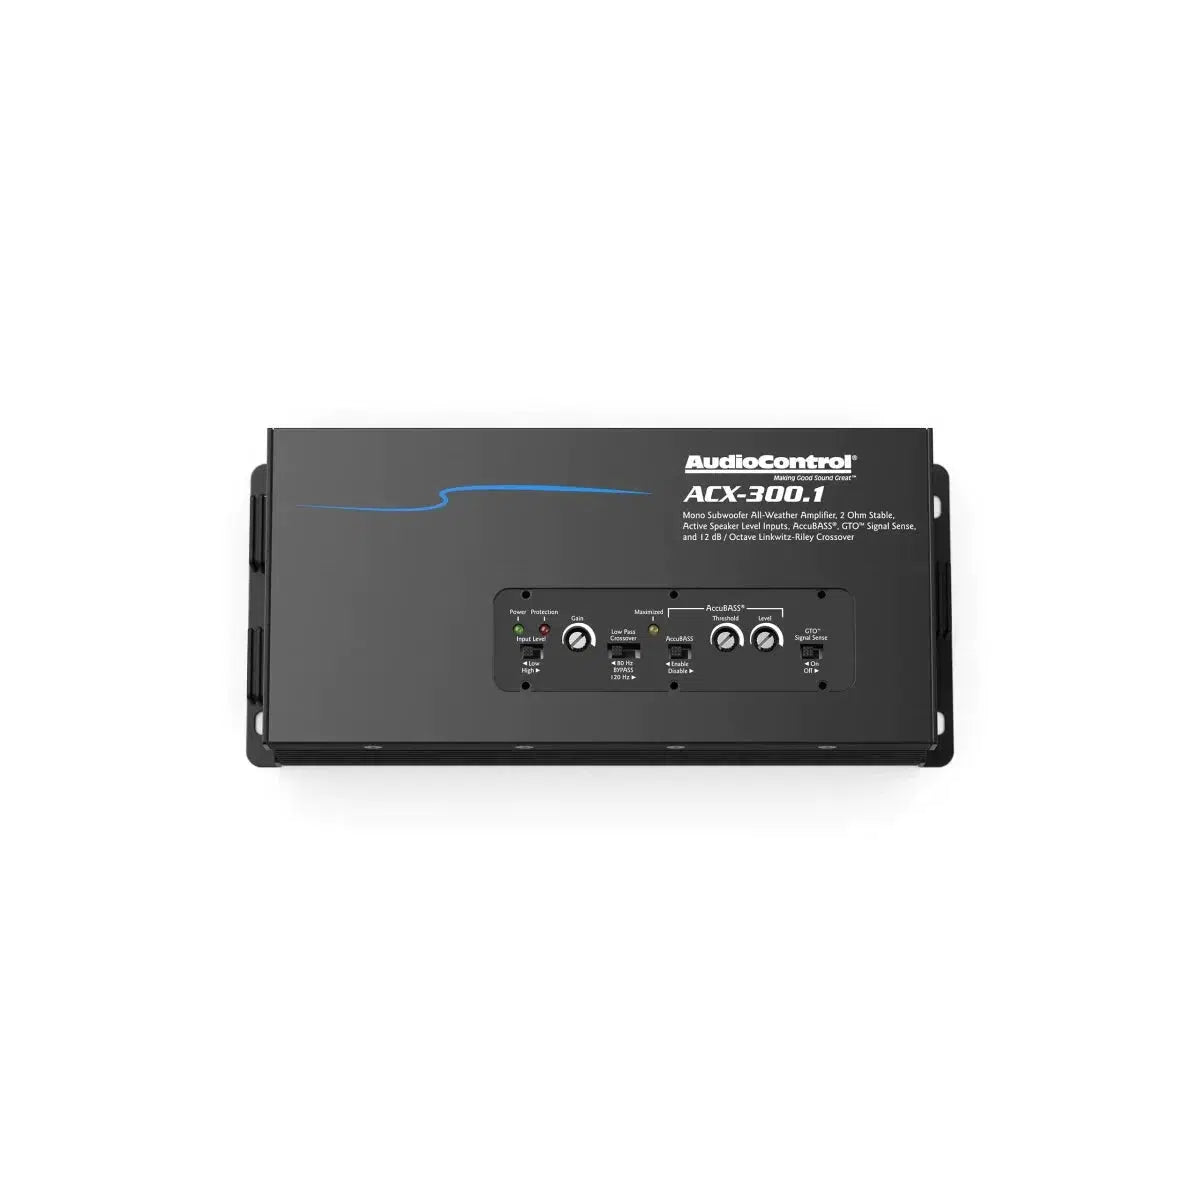 Audiocontrol-ACX-300.1-1-Channel Amplifier-Masori.de